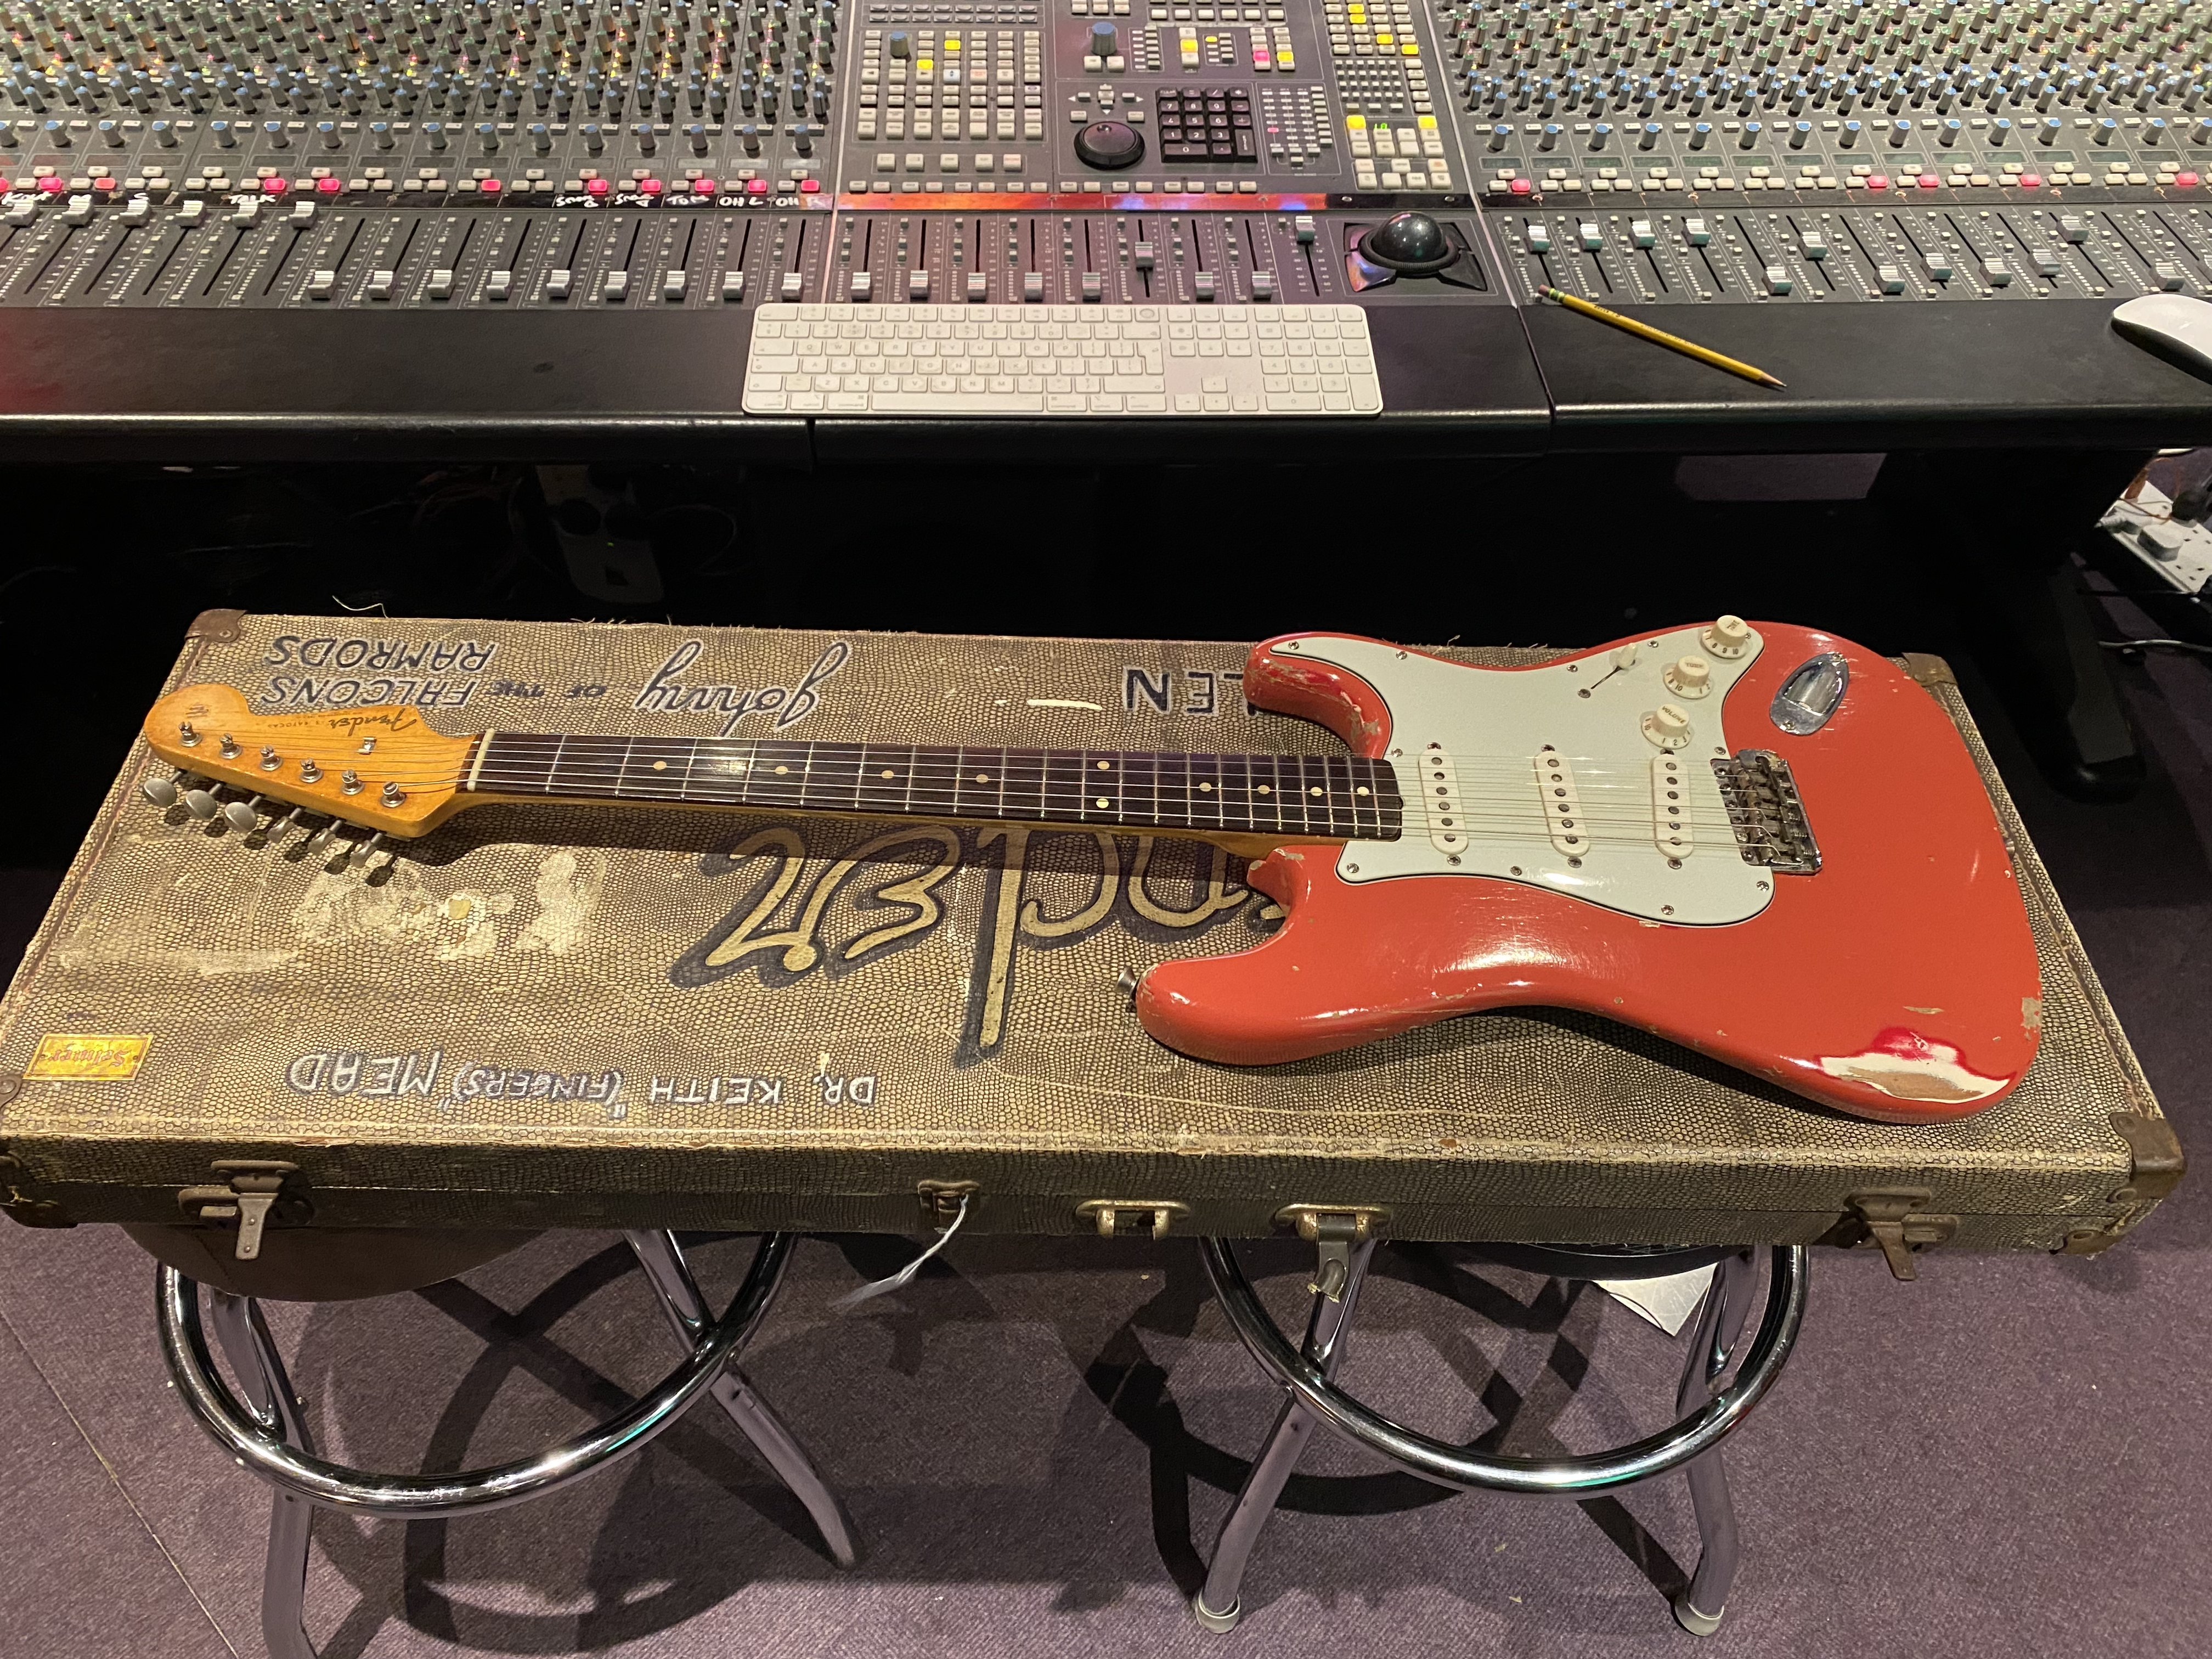 1961 Fender Stratocaster Fiesta Red 1 Artist Owner! Original Sales Receipt, Hang Tag, Case! 60s Vintage Guitar!